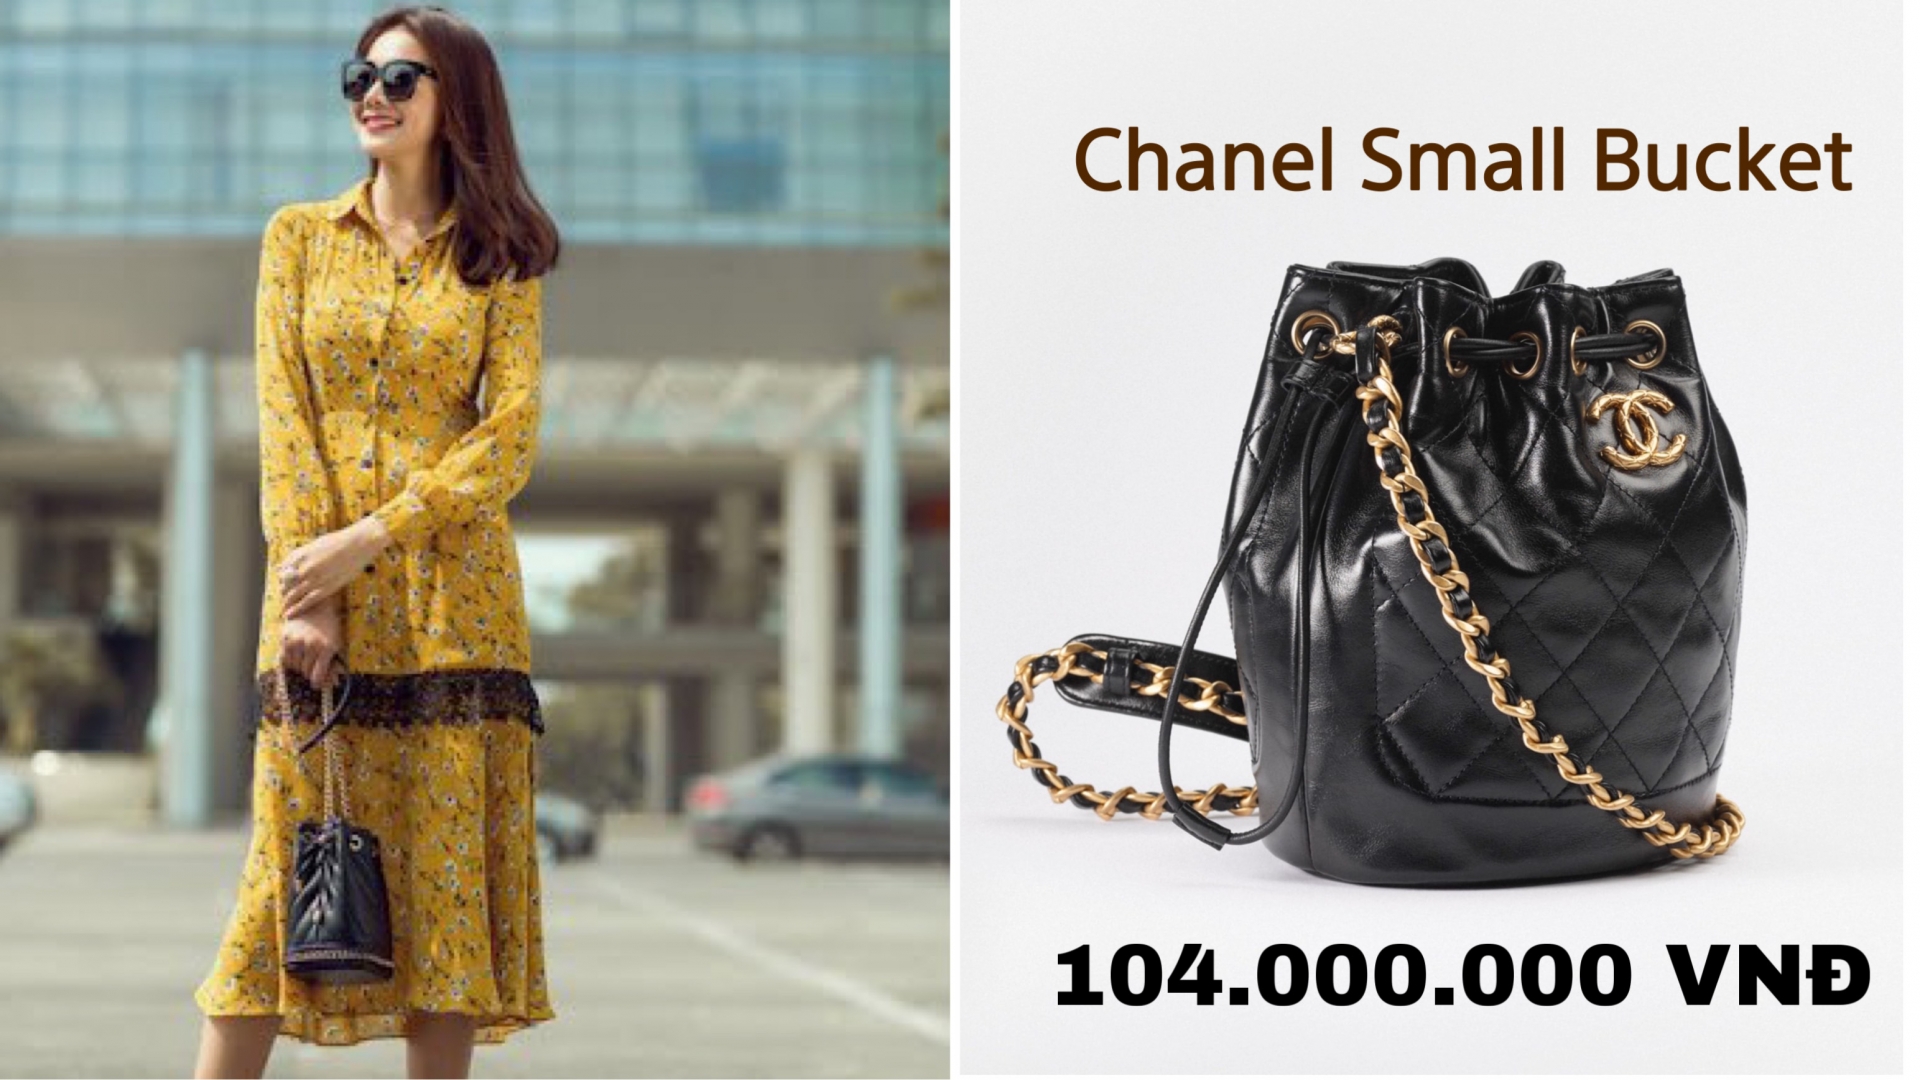 Chiếc túi nhỏ bé thuộc dòng Chanel Small Bucket được người đẹp kết hợp cùng với các trang phục nữ tính.